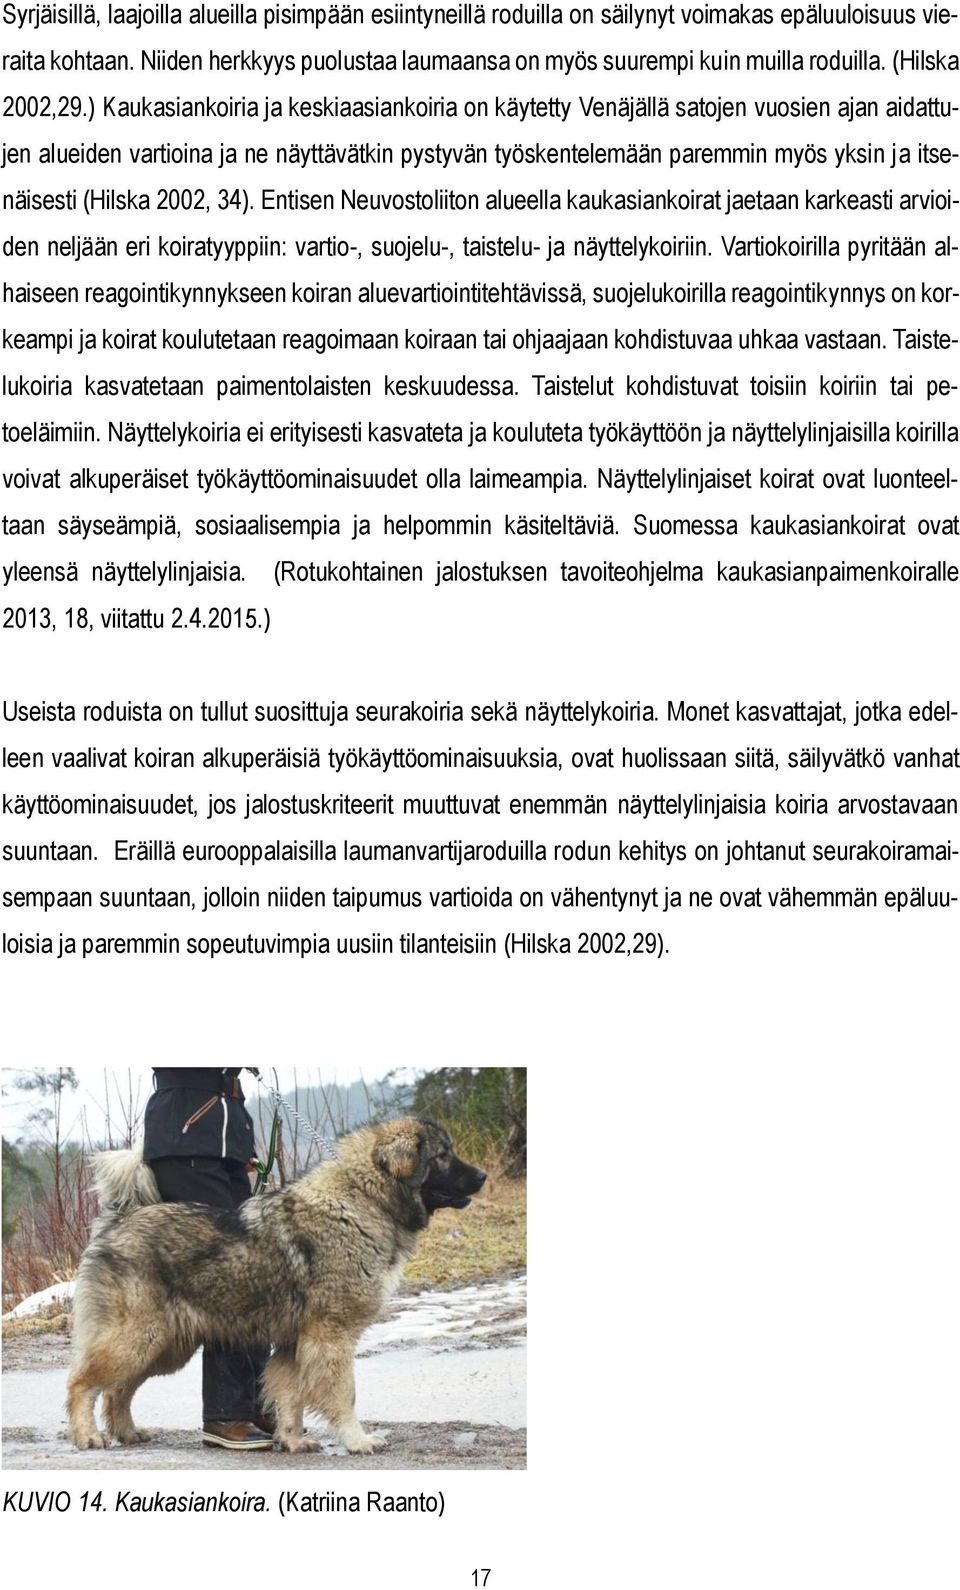 ) Kaukasiankoiria ja keskiaasiankoiria on käytetty Venäjällä satojen vuosien ajan aidattujen alueiden vartioina ja ne näyttävätkin pystyvän työskentelemään paremmin myös yksin ja itsenäisesti (Hilska